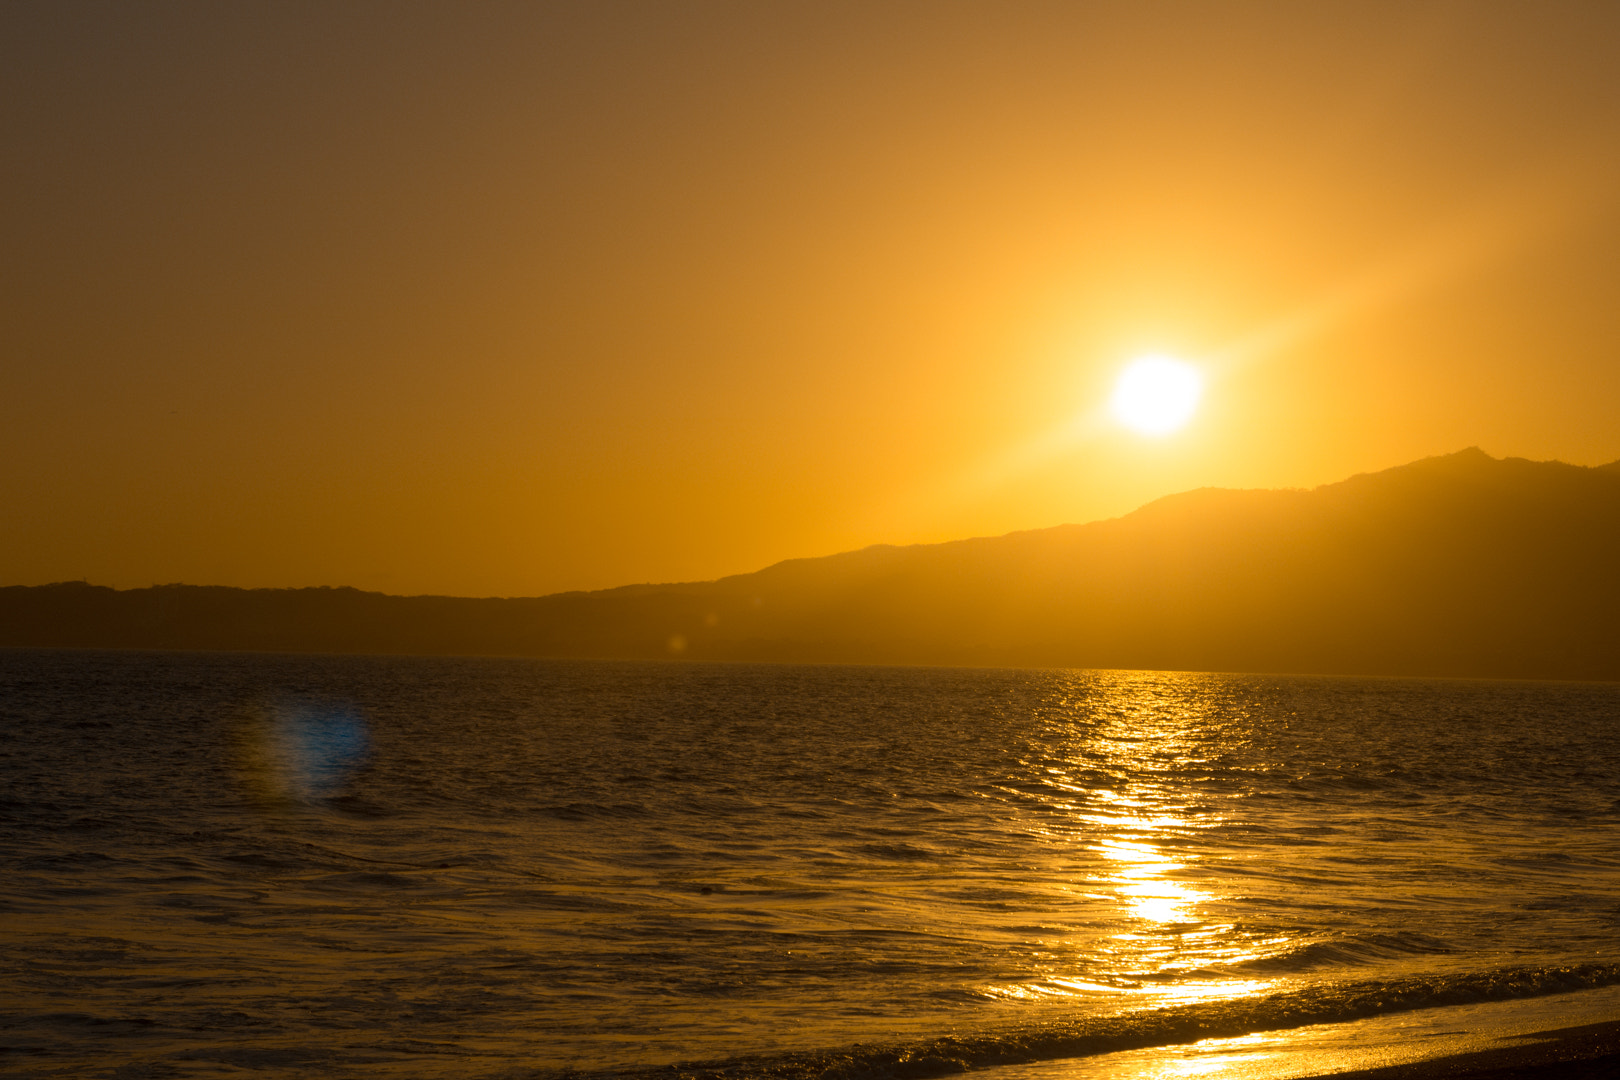 Canon EOS 760D (EOS Rebel T6s / EOS 8000D) + Sigma 24-70mm F2.8 EX DG Macro sample photo. Golden sunset at puerto valalrta photography